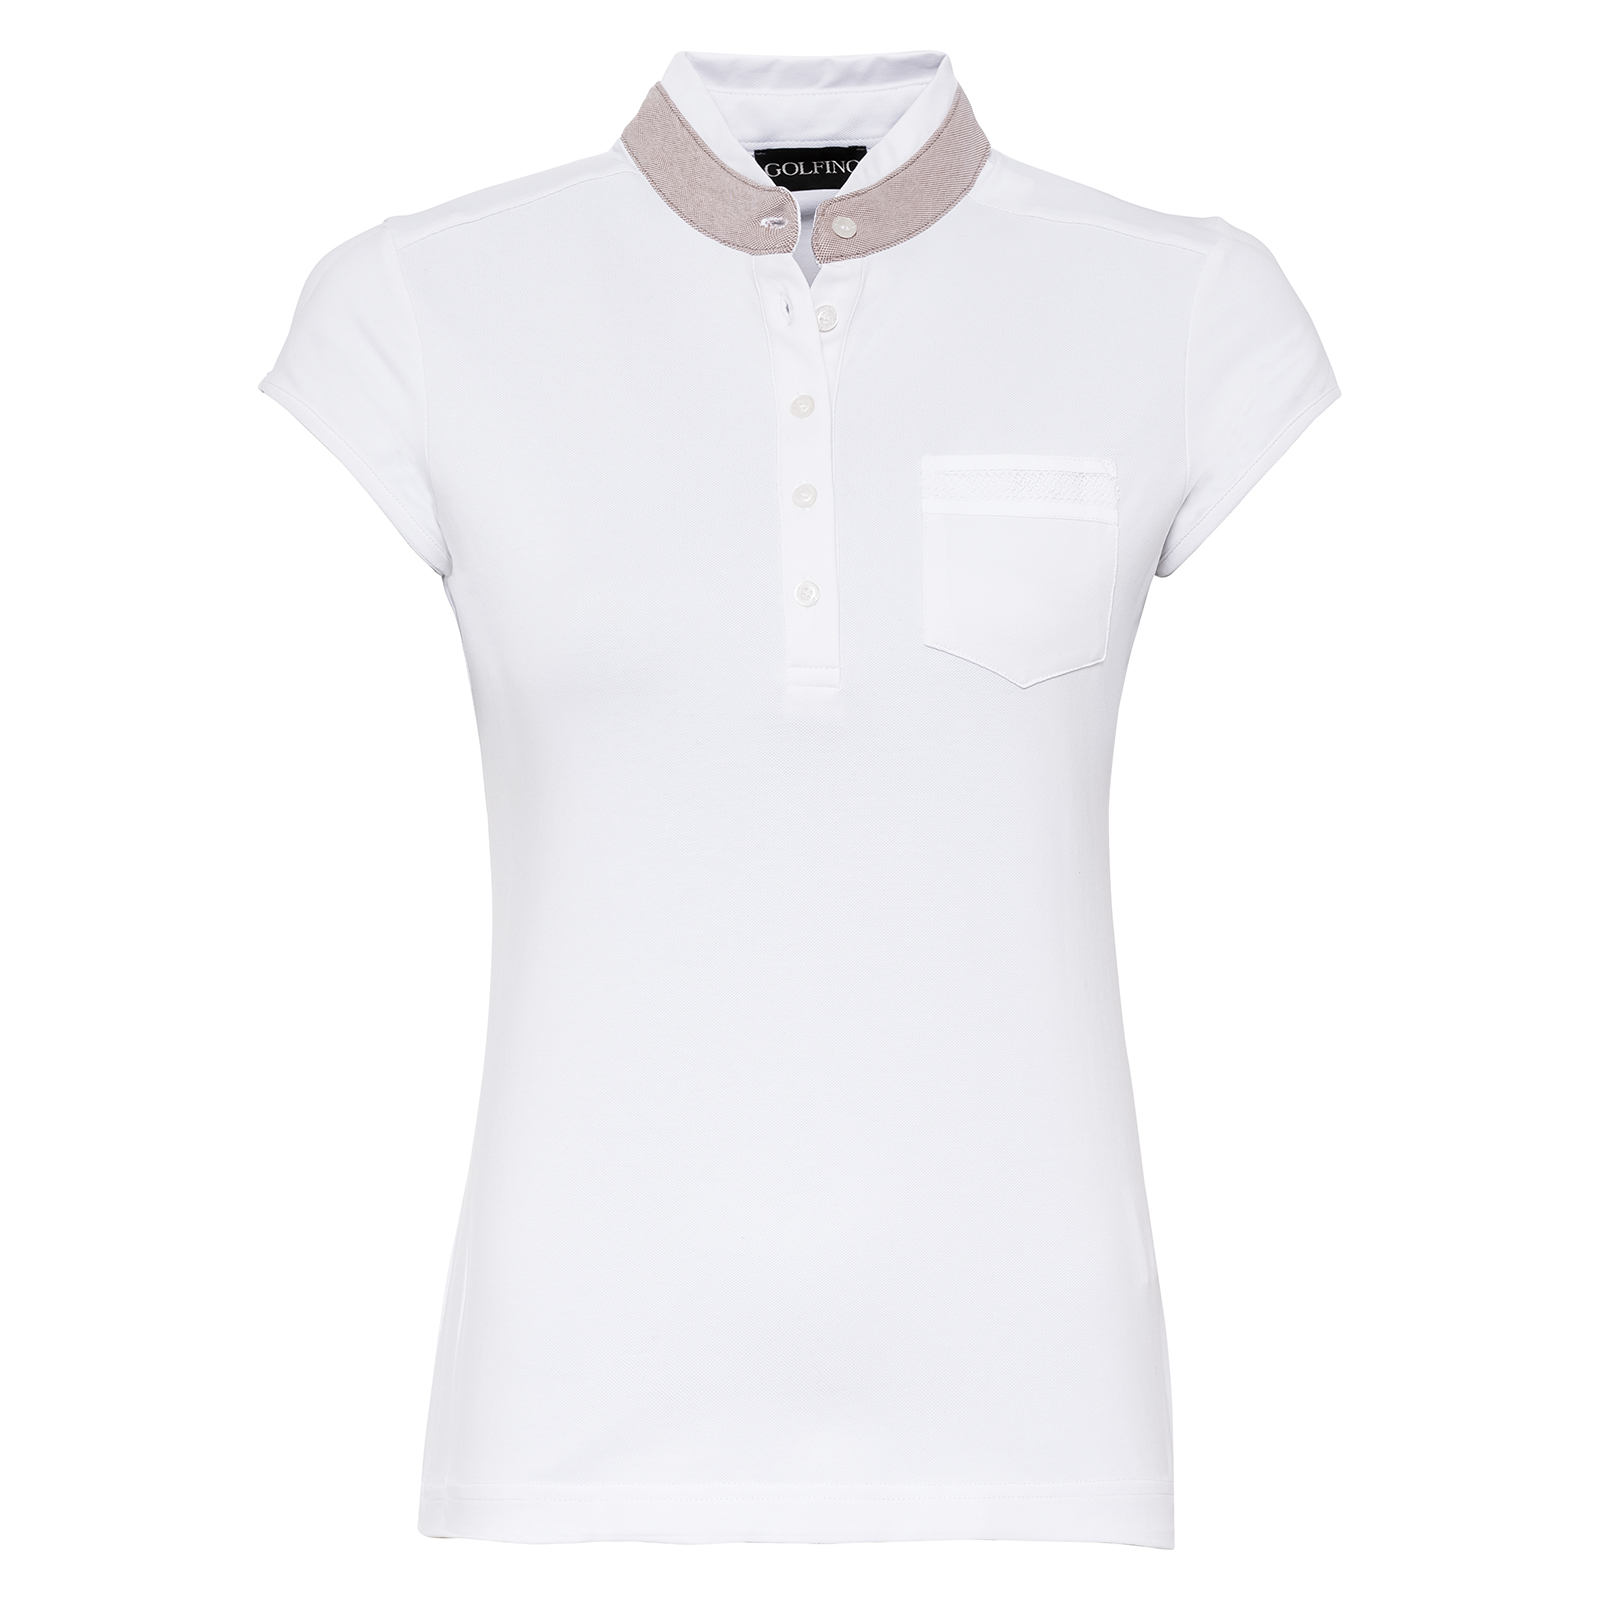 Damen Golf Poloshirt mit Stretch-Funktion und Flügelärmeln